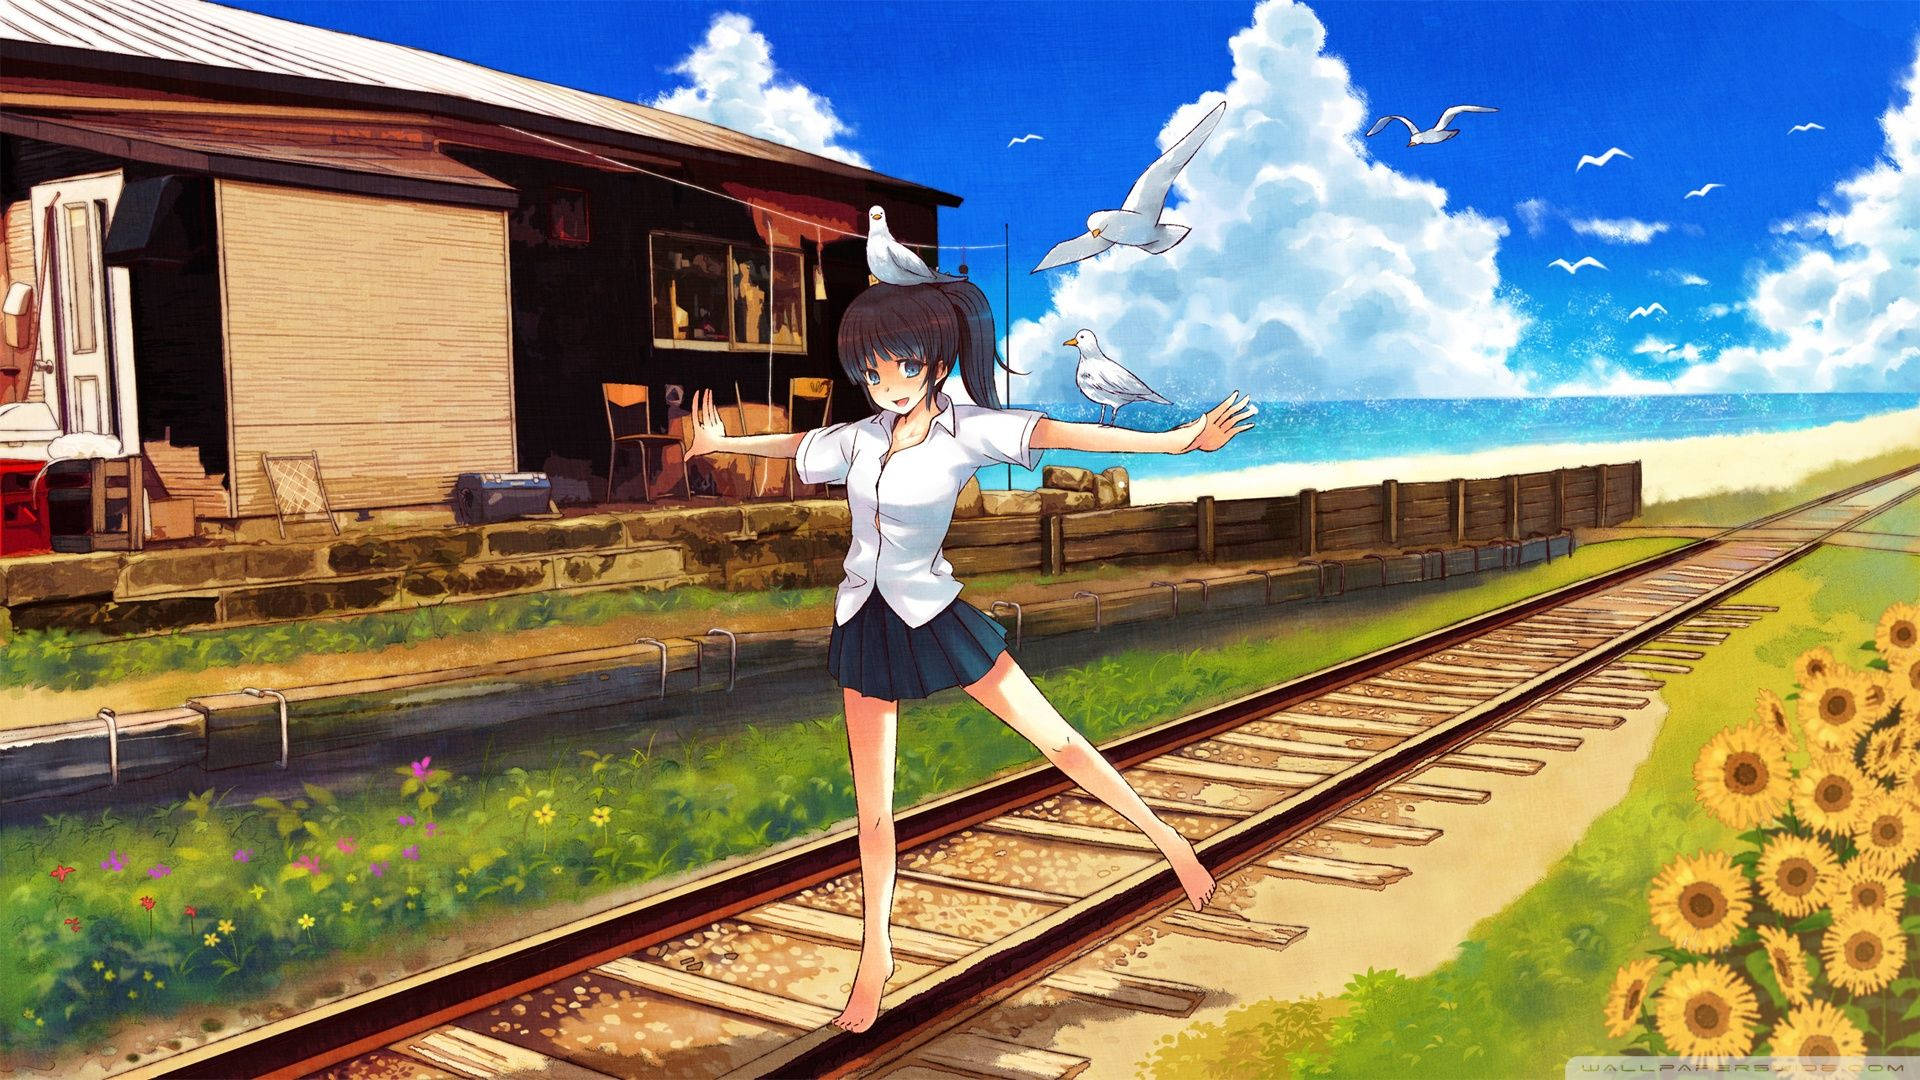 Lovely Girl Anime Scenery Background